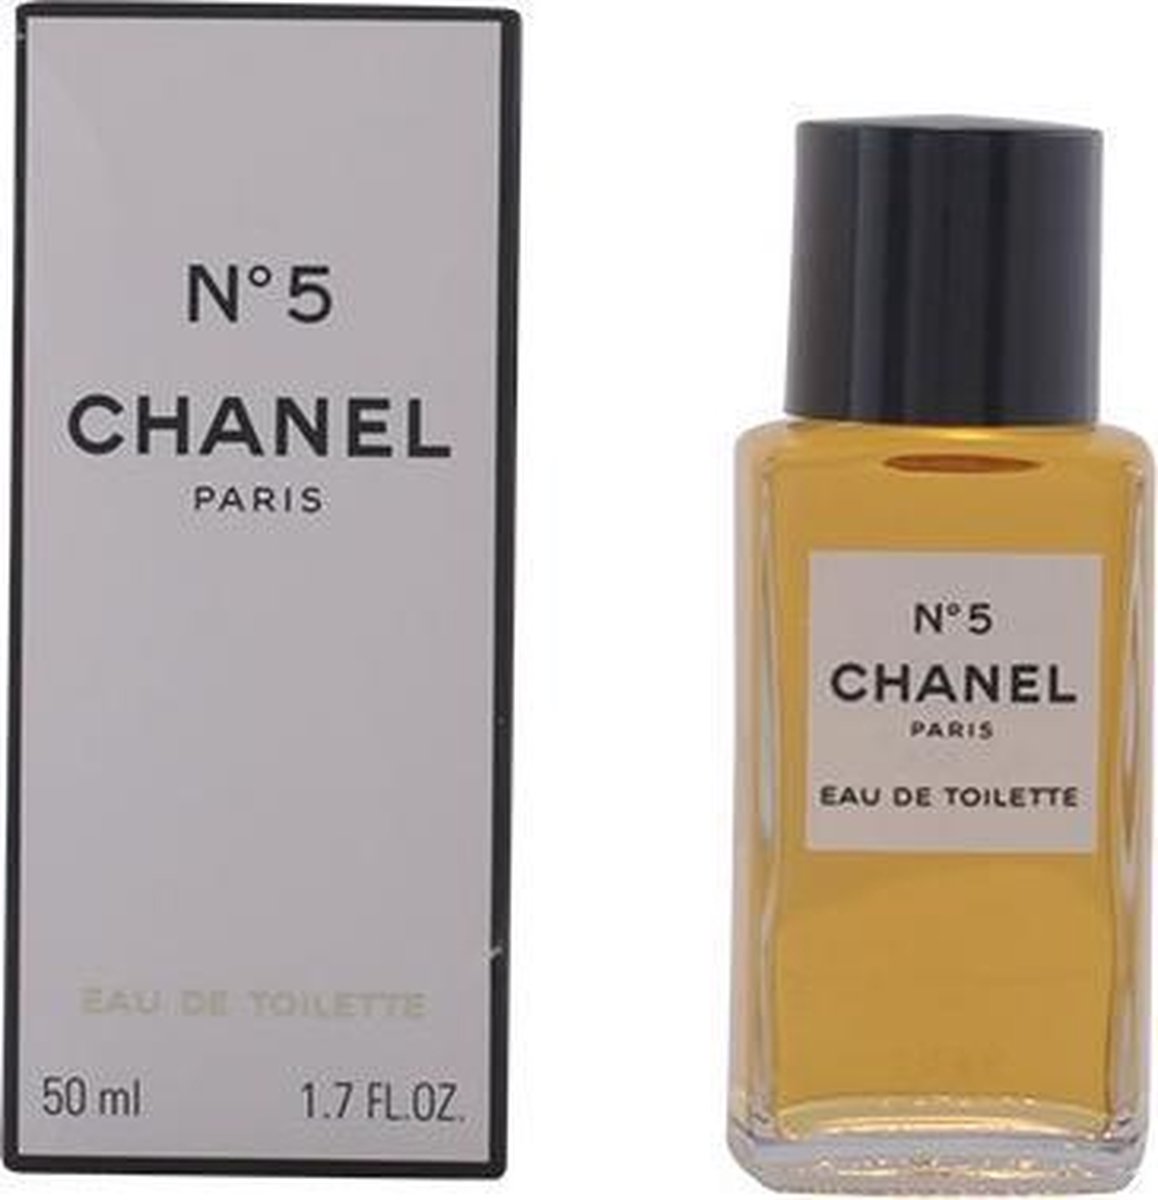 Chanel N°5 eau première eau de parfum 50 ml - Vinted